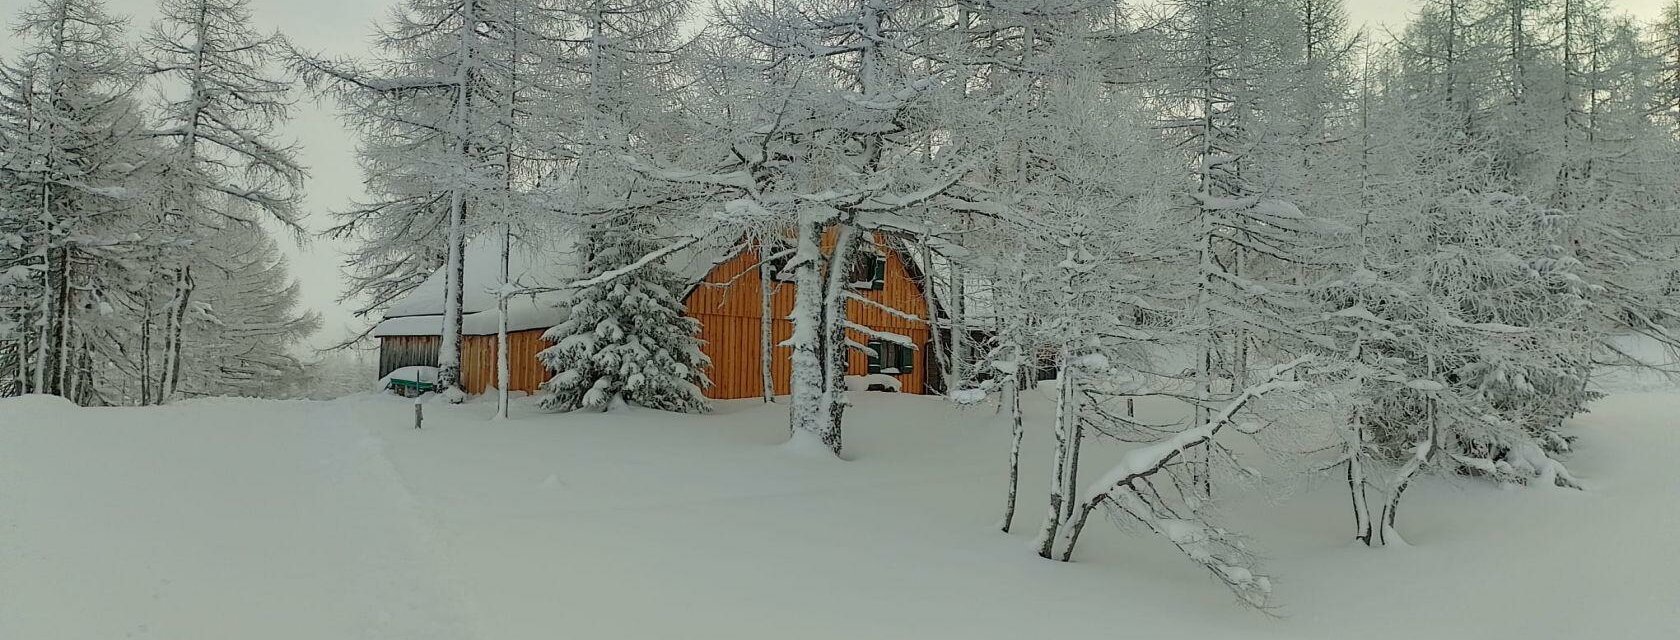 Jagdhütte, Ansicht im Winter